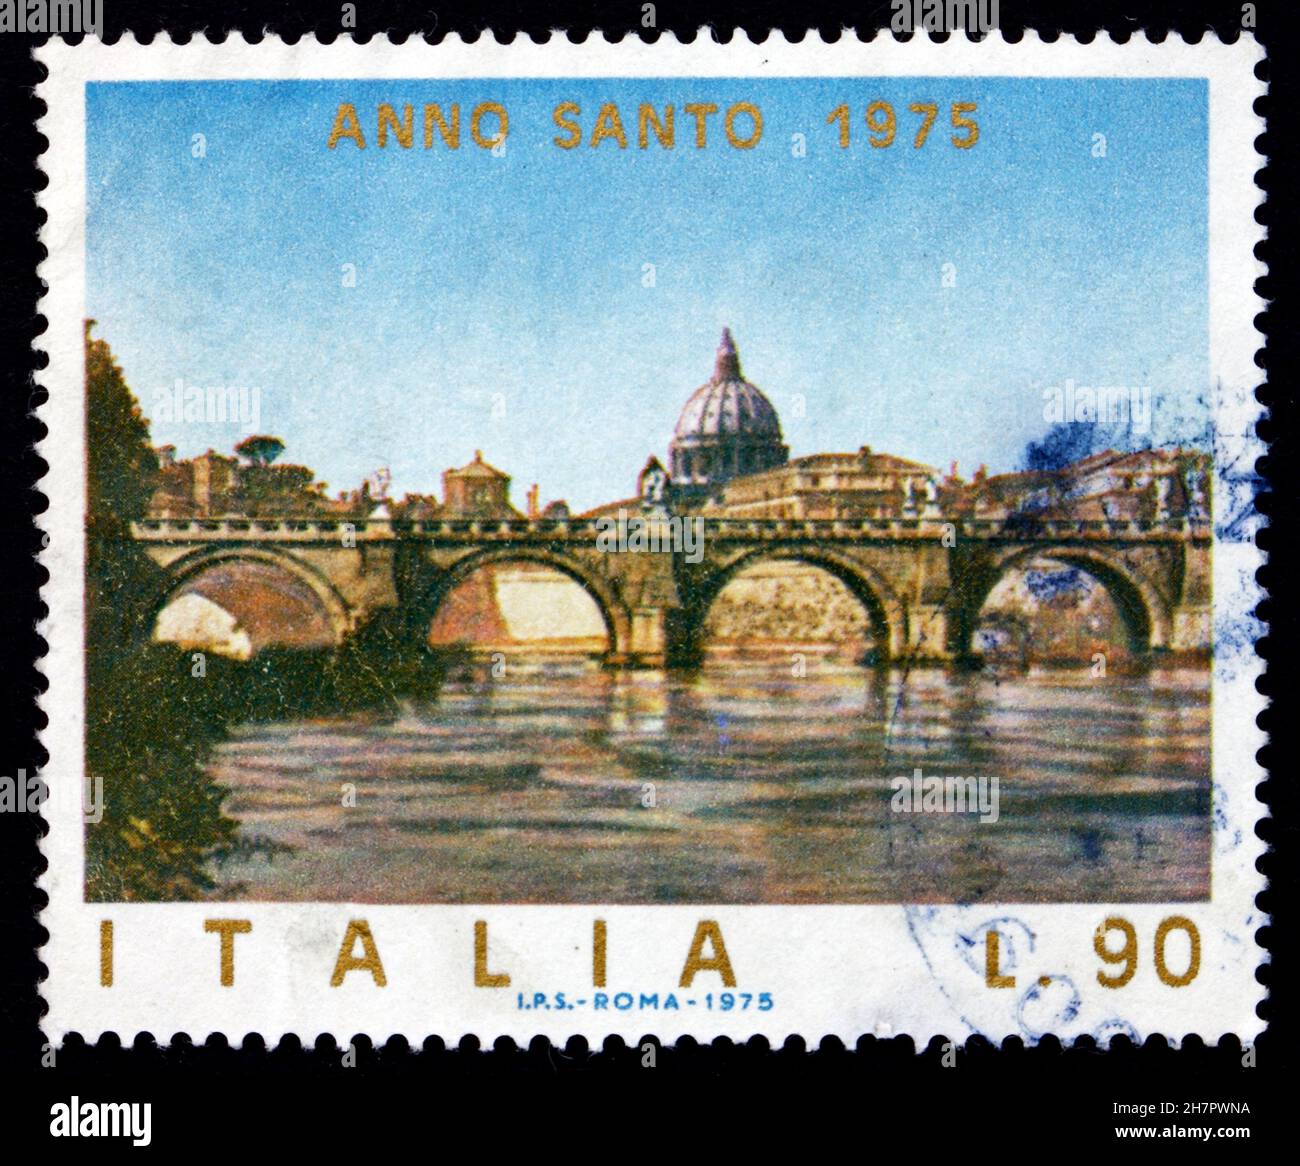 ITALIEN - UM 1975: Eine in Italien gedruckte Briefmarke zeigt die Engelsbrücke, Rom, Vatikan, um 1975 Stockfoto